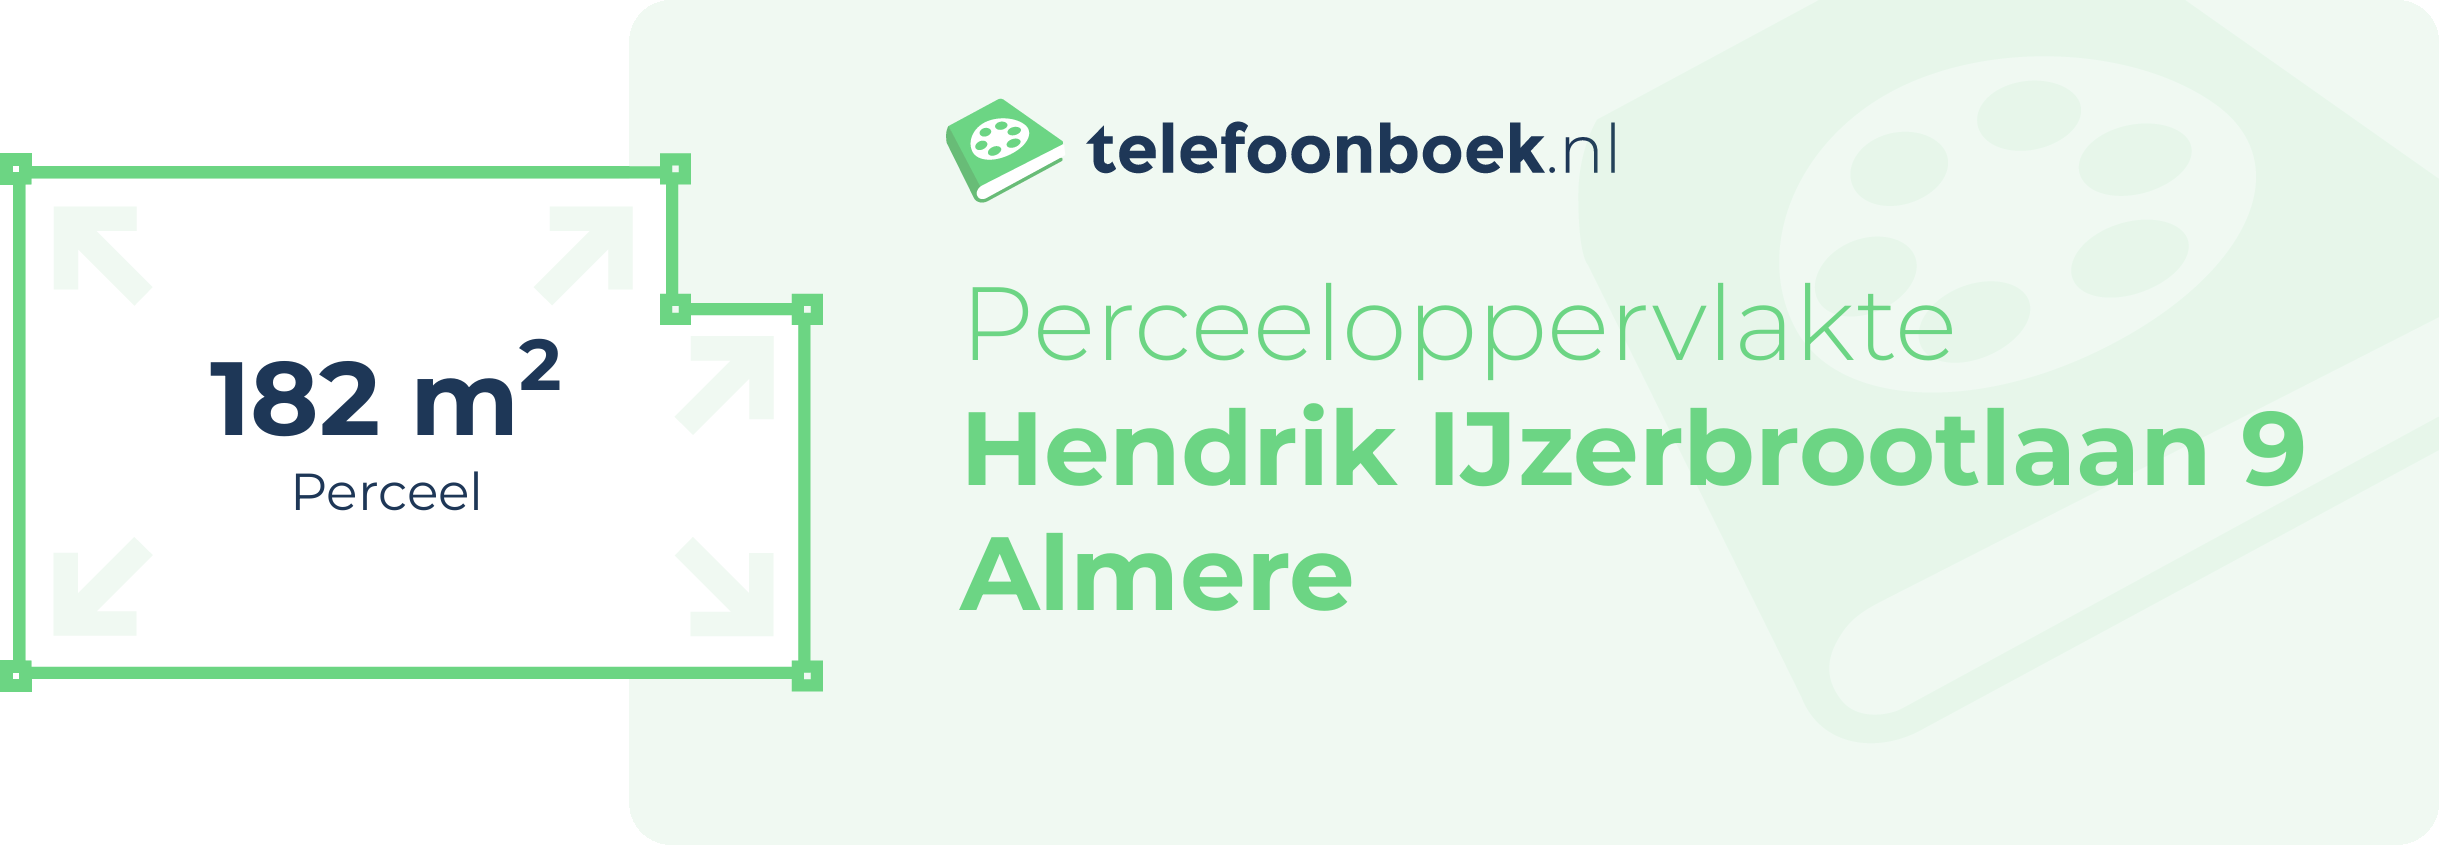 Perceeloppervlakte Hendrik IJzerbrootlaan 9 Almere